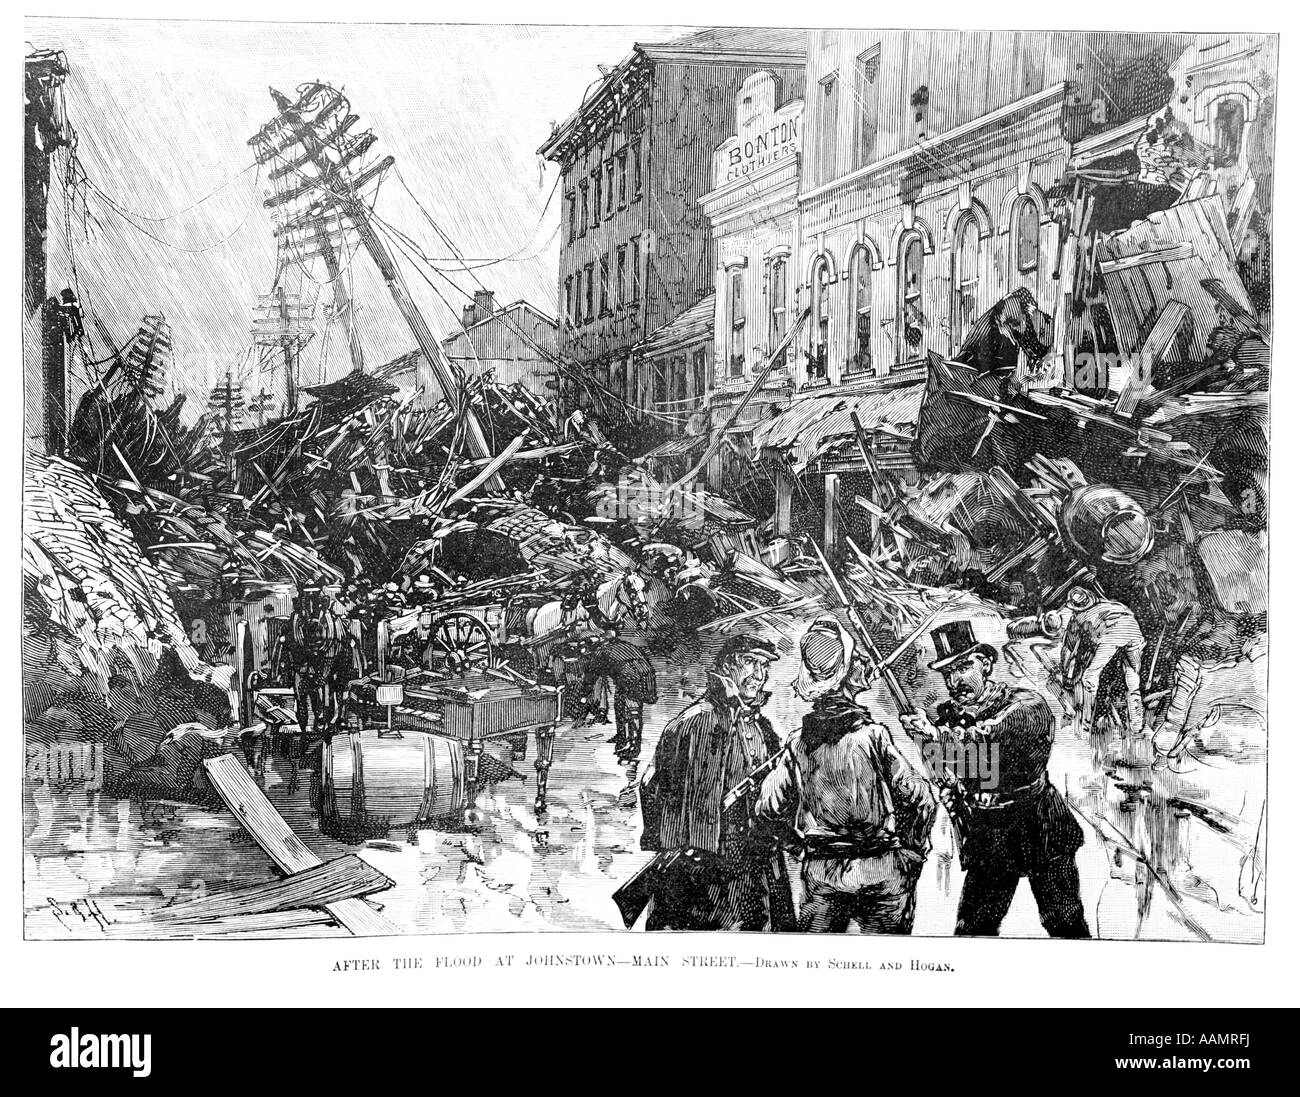 Illustrazione 31 MAGGIO 1889 due protezioni fermare l'uomo entri JOHNSTOWN PA MAIN STREET rovine dopo la catastrofe provocata dalle inondazioni Foto Stock